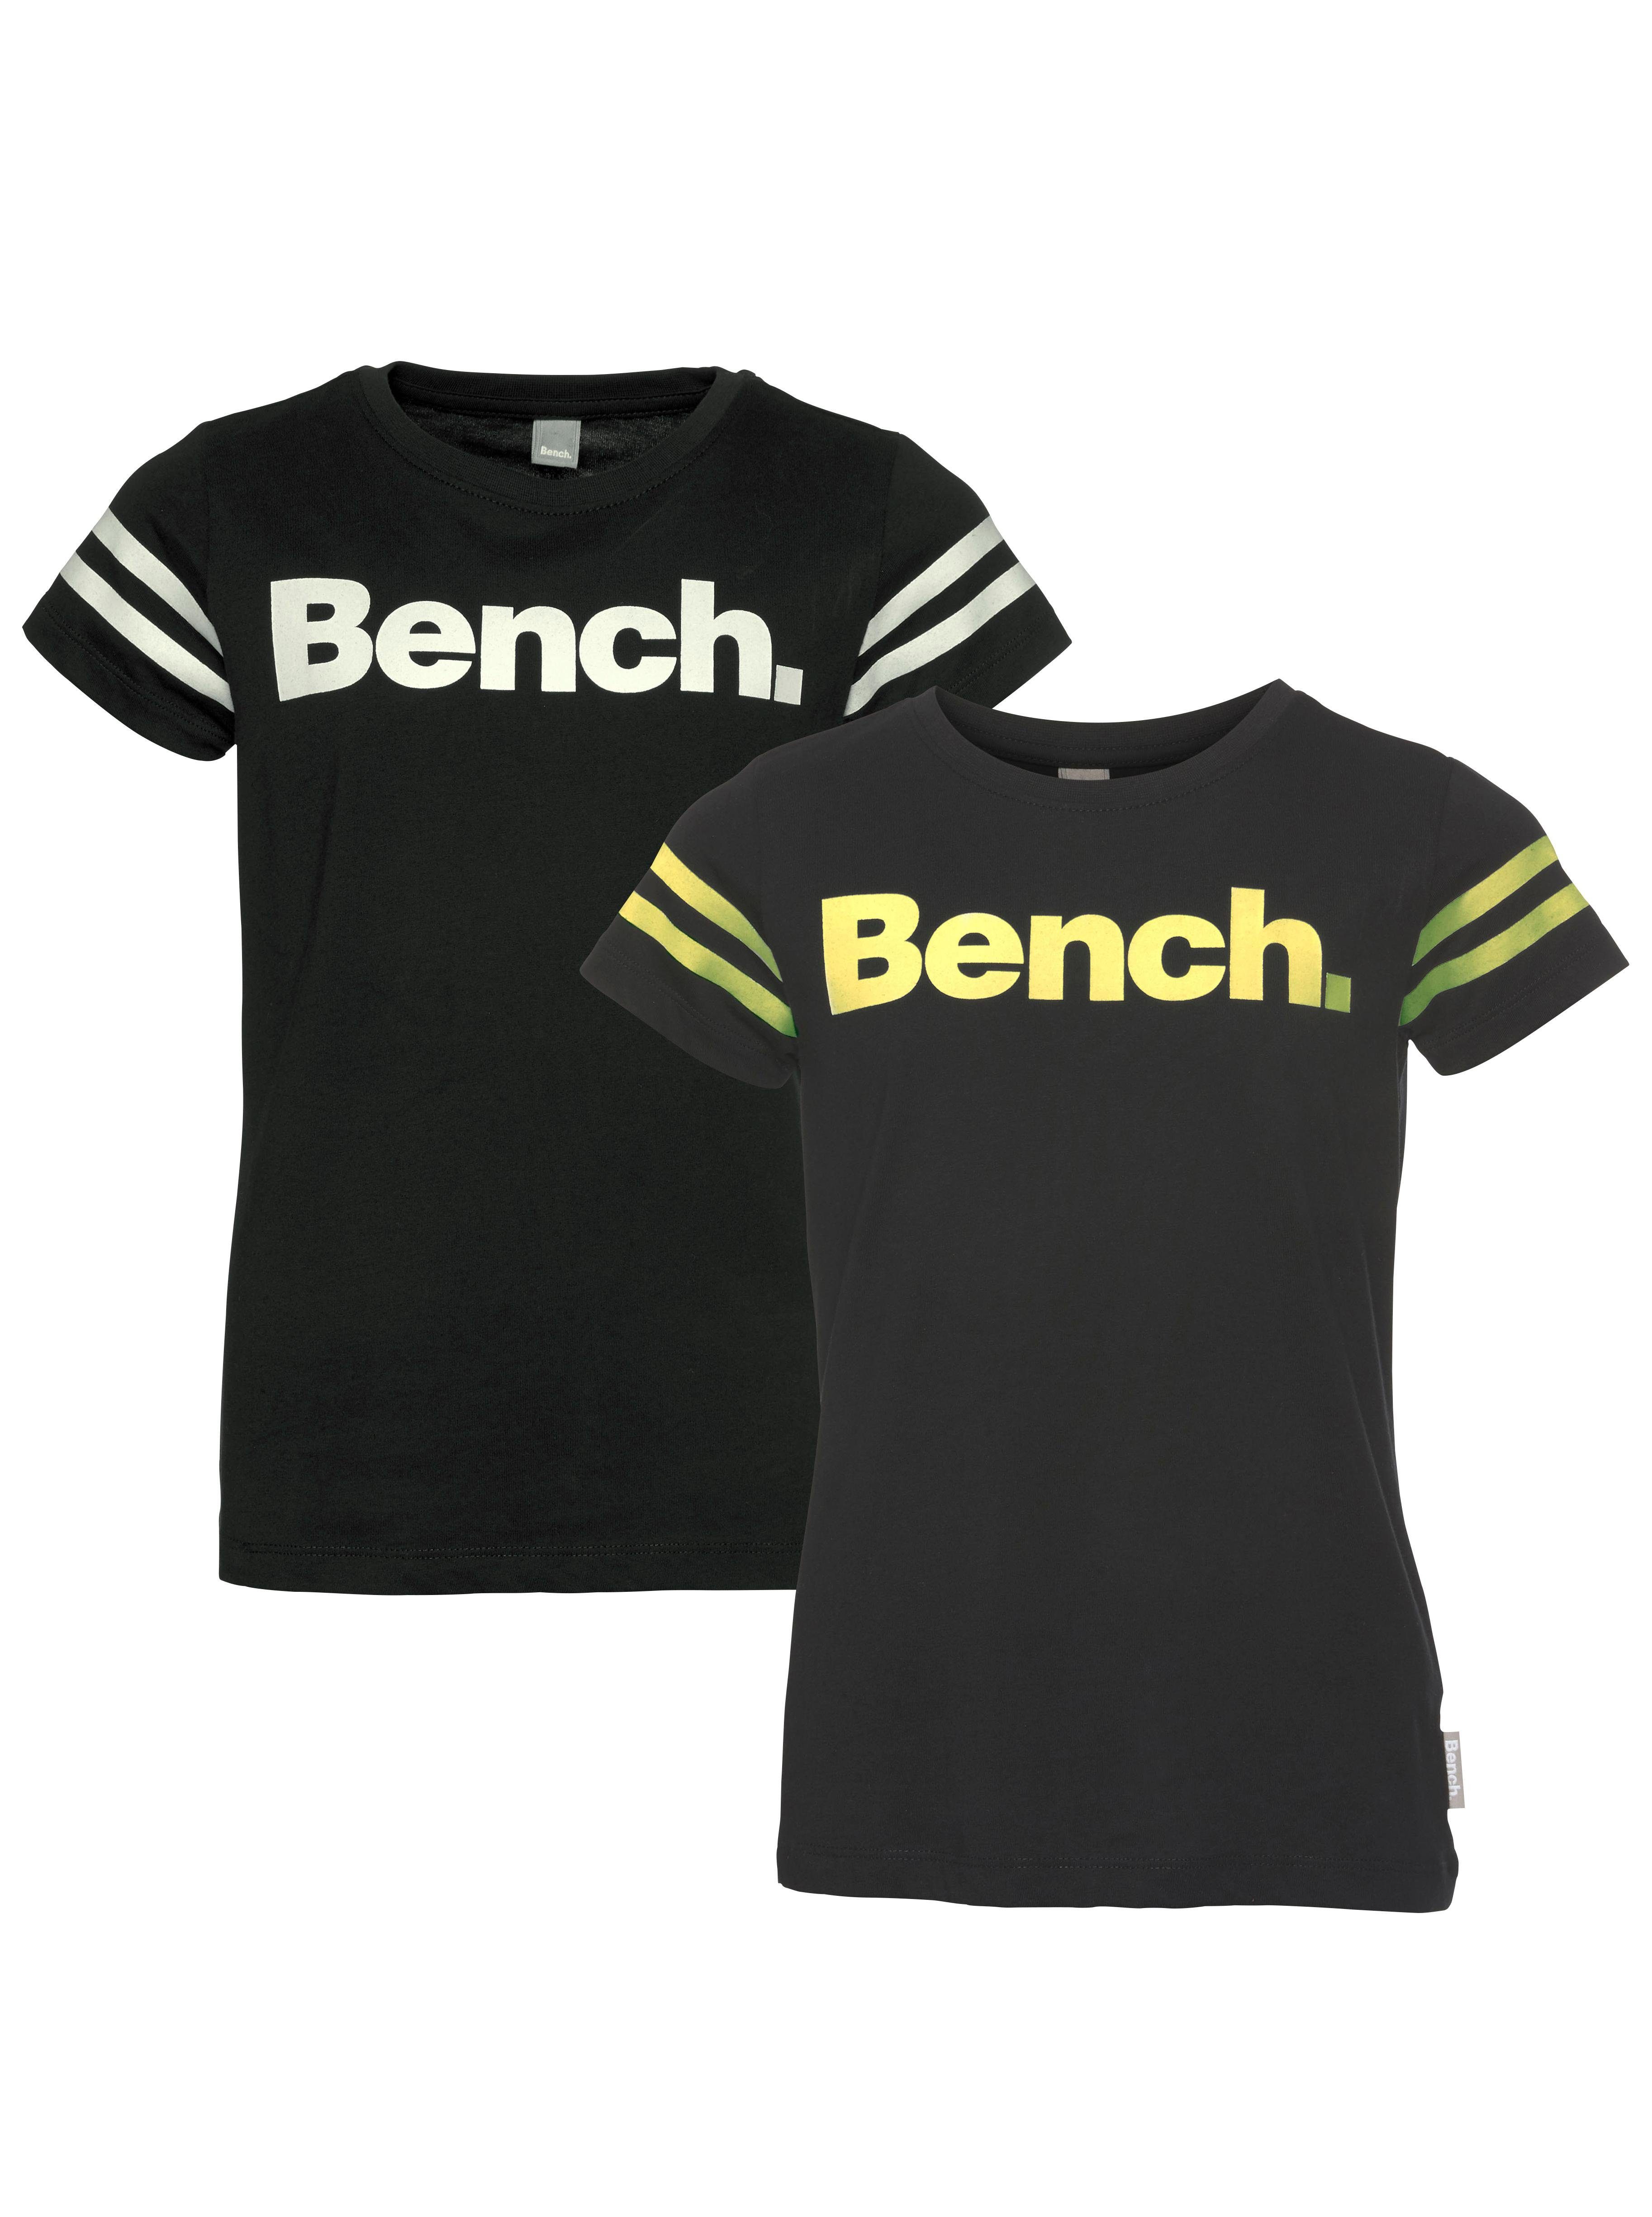 Bench. T-Shirt Print leuchtet im Streifen mit am Dunkeln Ärmel